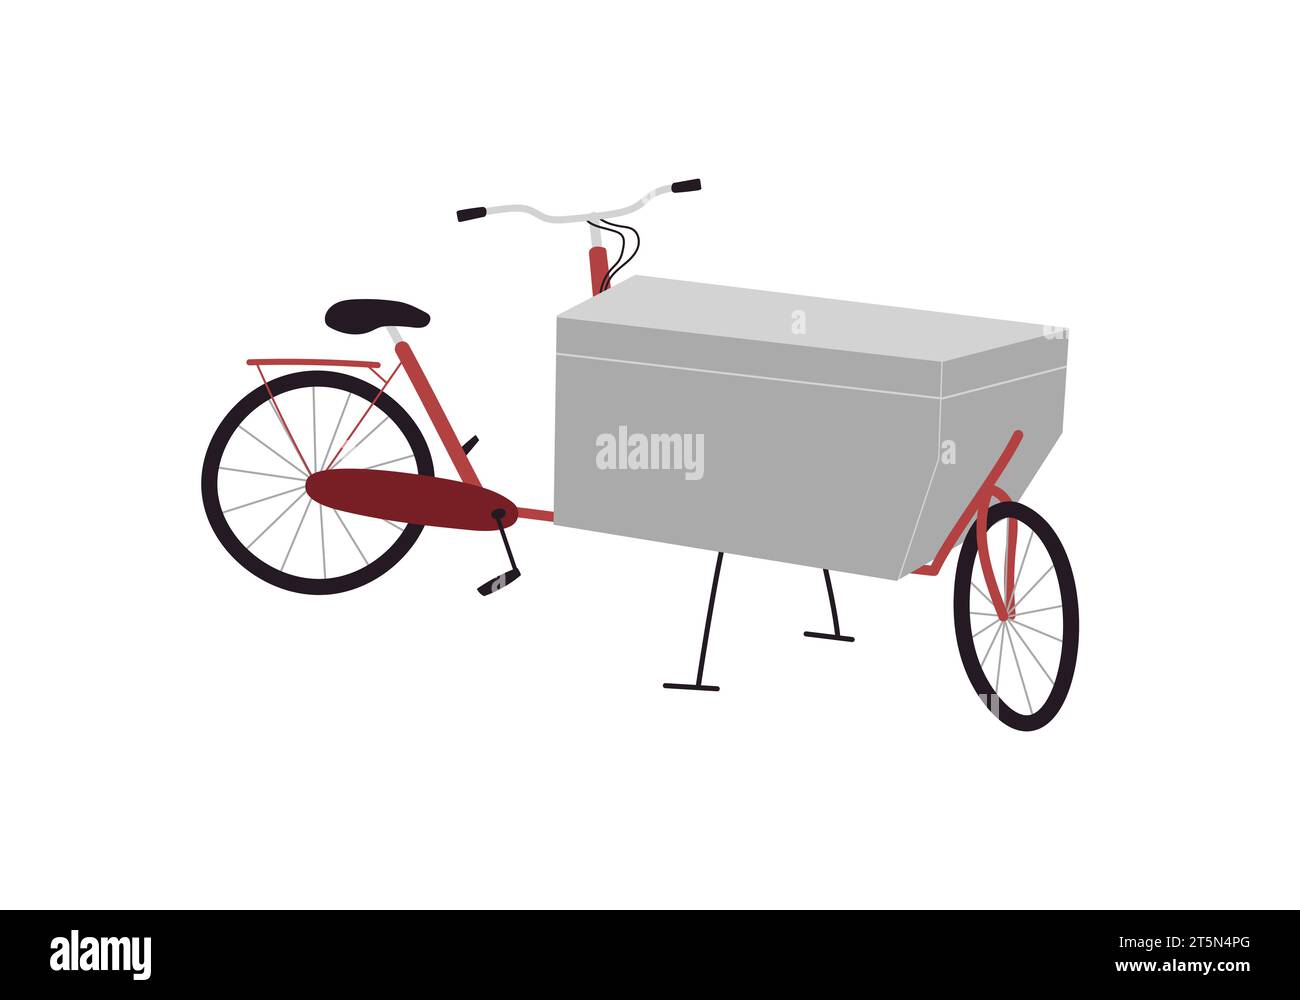 Box-Bike elektrisch mit vorderem Kofferraum für Übergabevermessung. Fahrradvektor isolierte Illustration realistischer Stil Stock Vektor